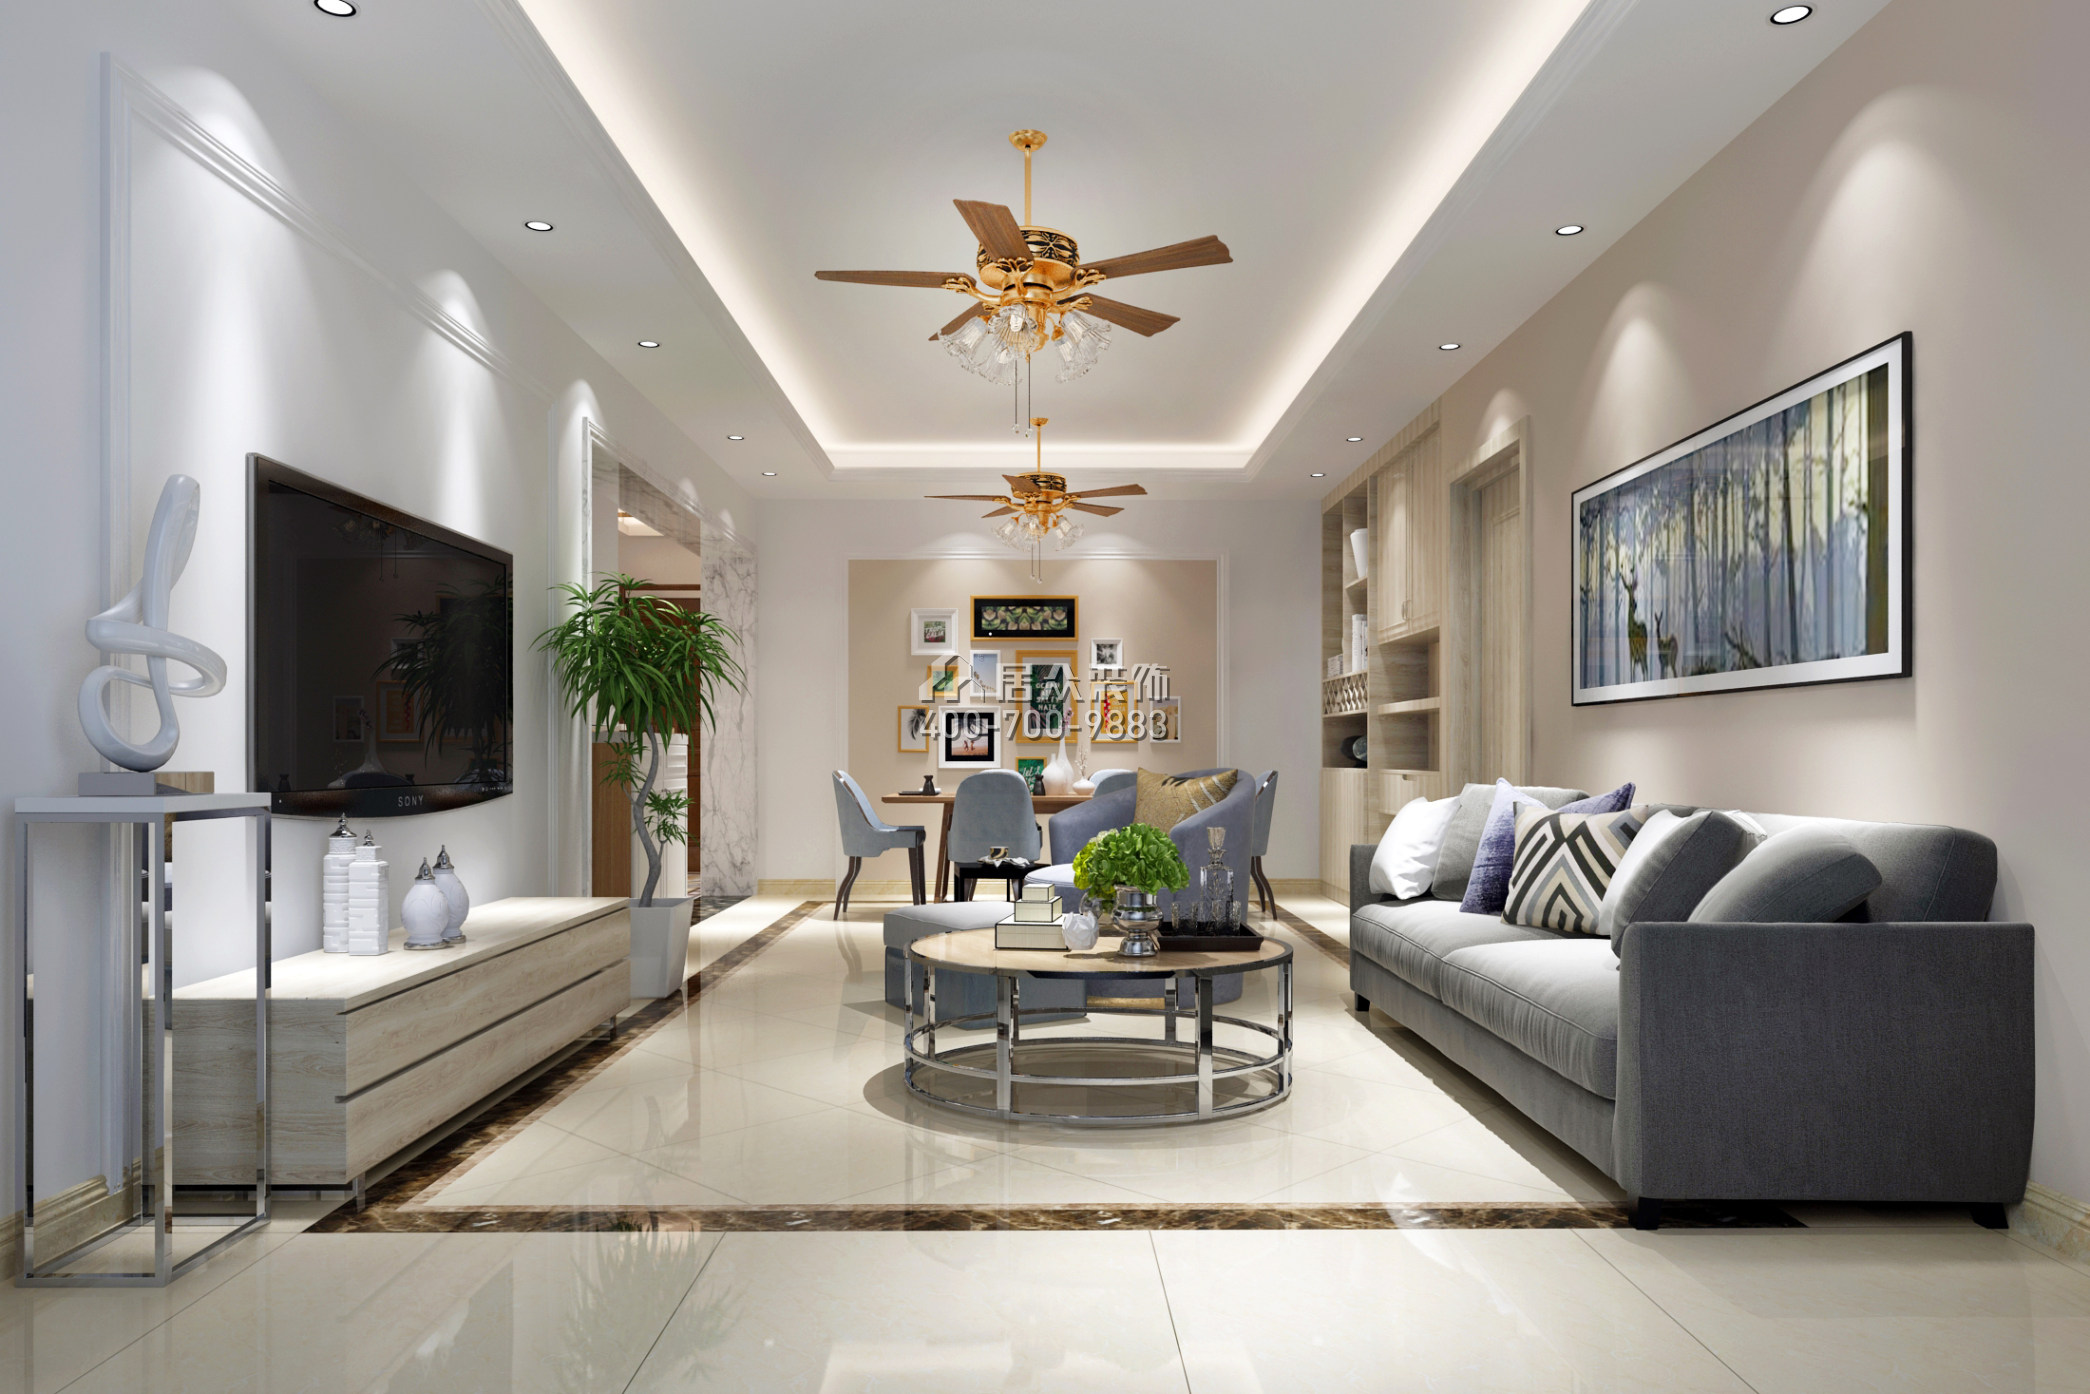 俊景豪園102平方米現代簡約風格平層戶型客廳裝修效果圖